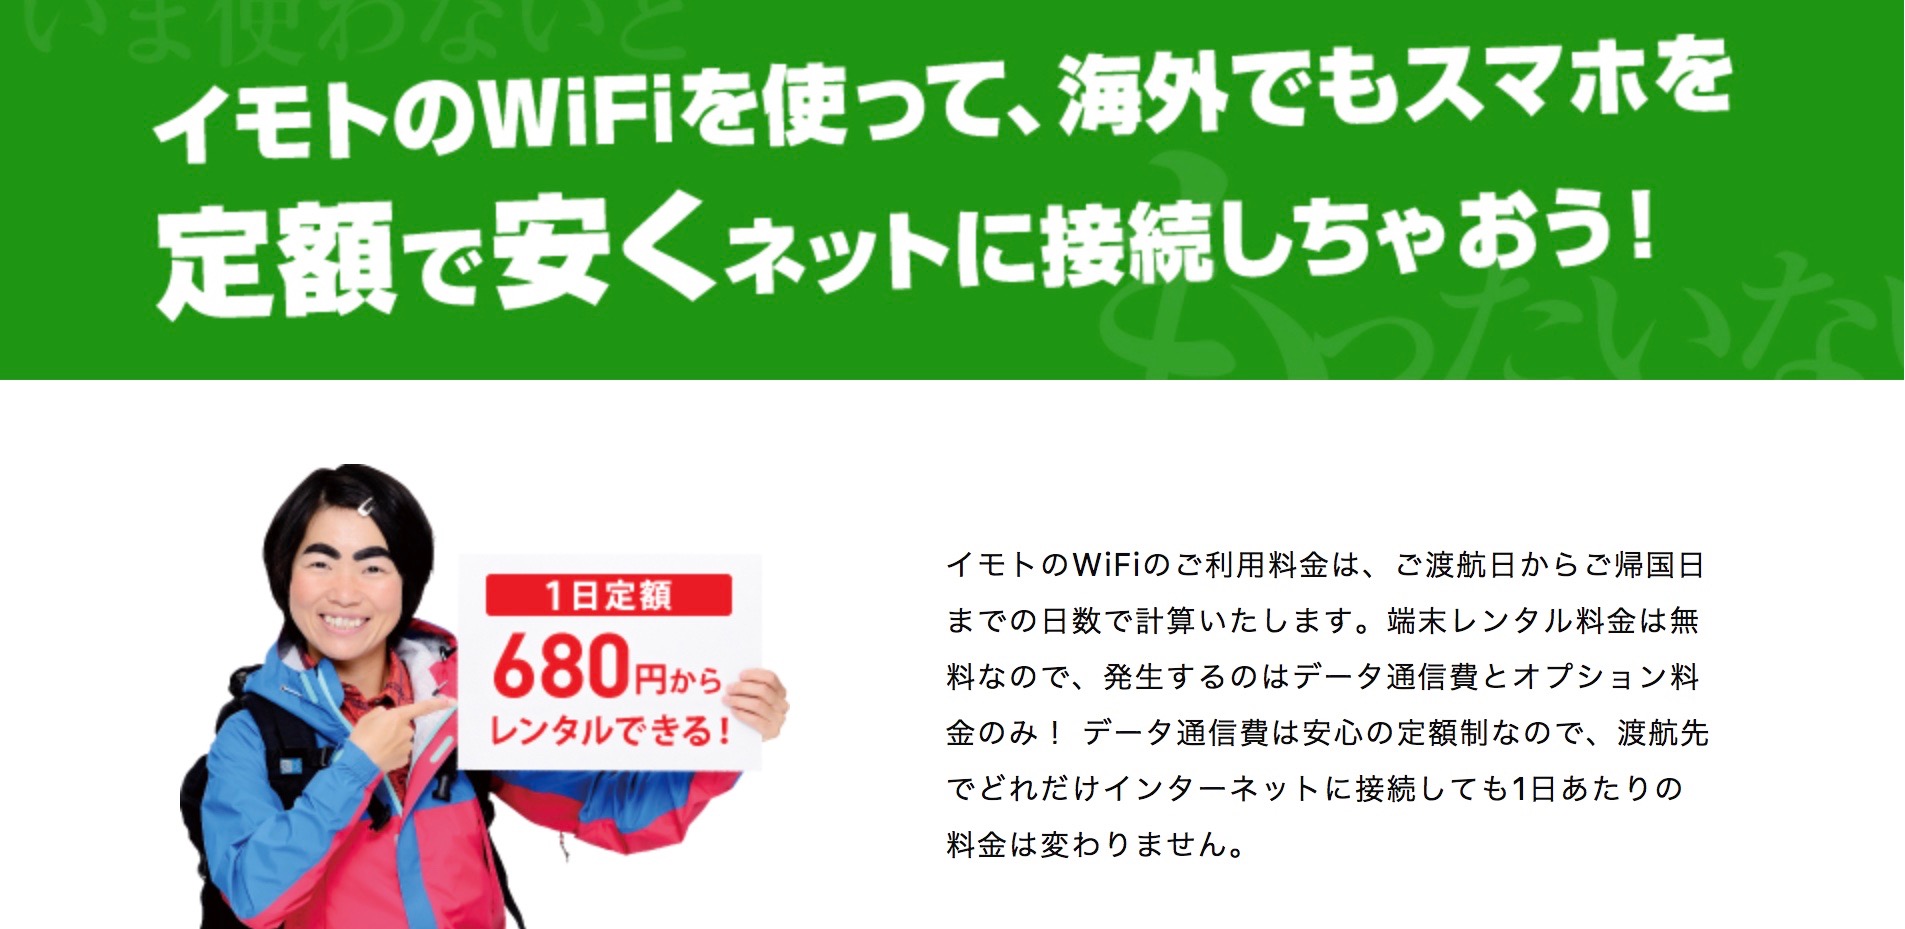 羽田空港wifi